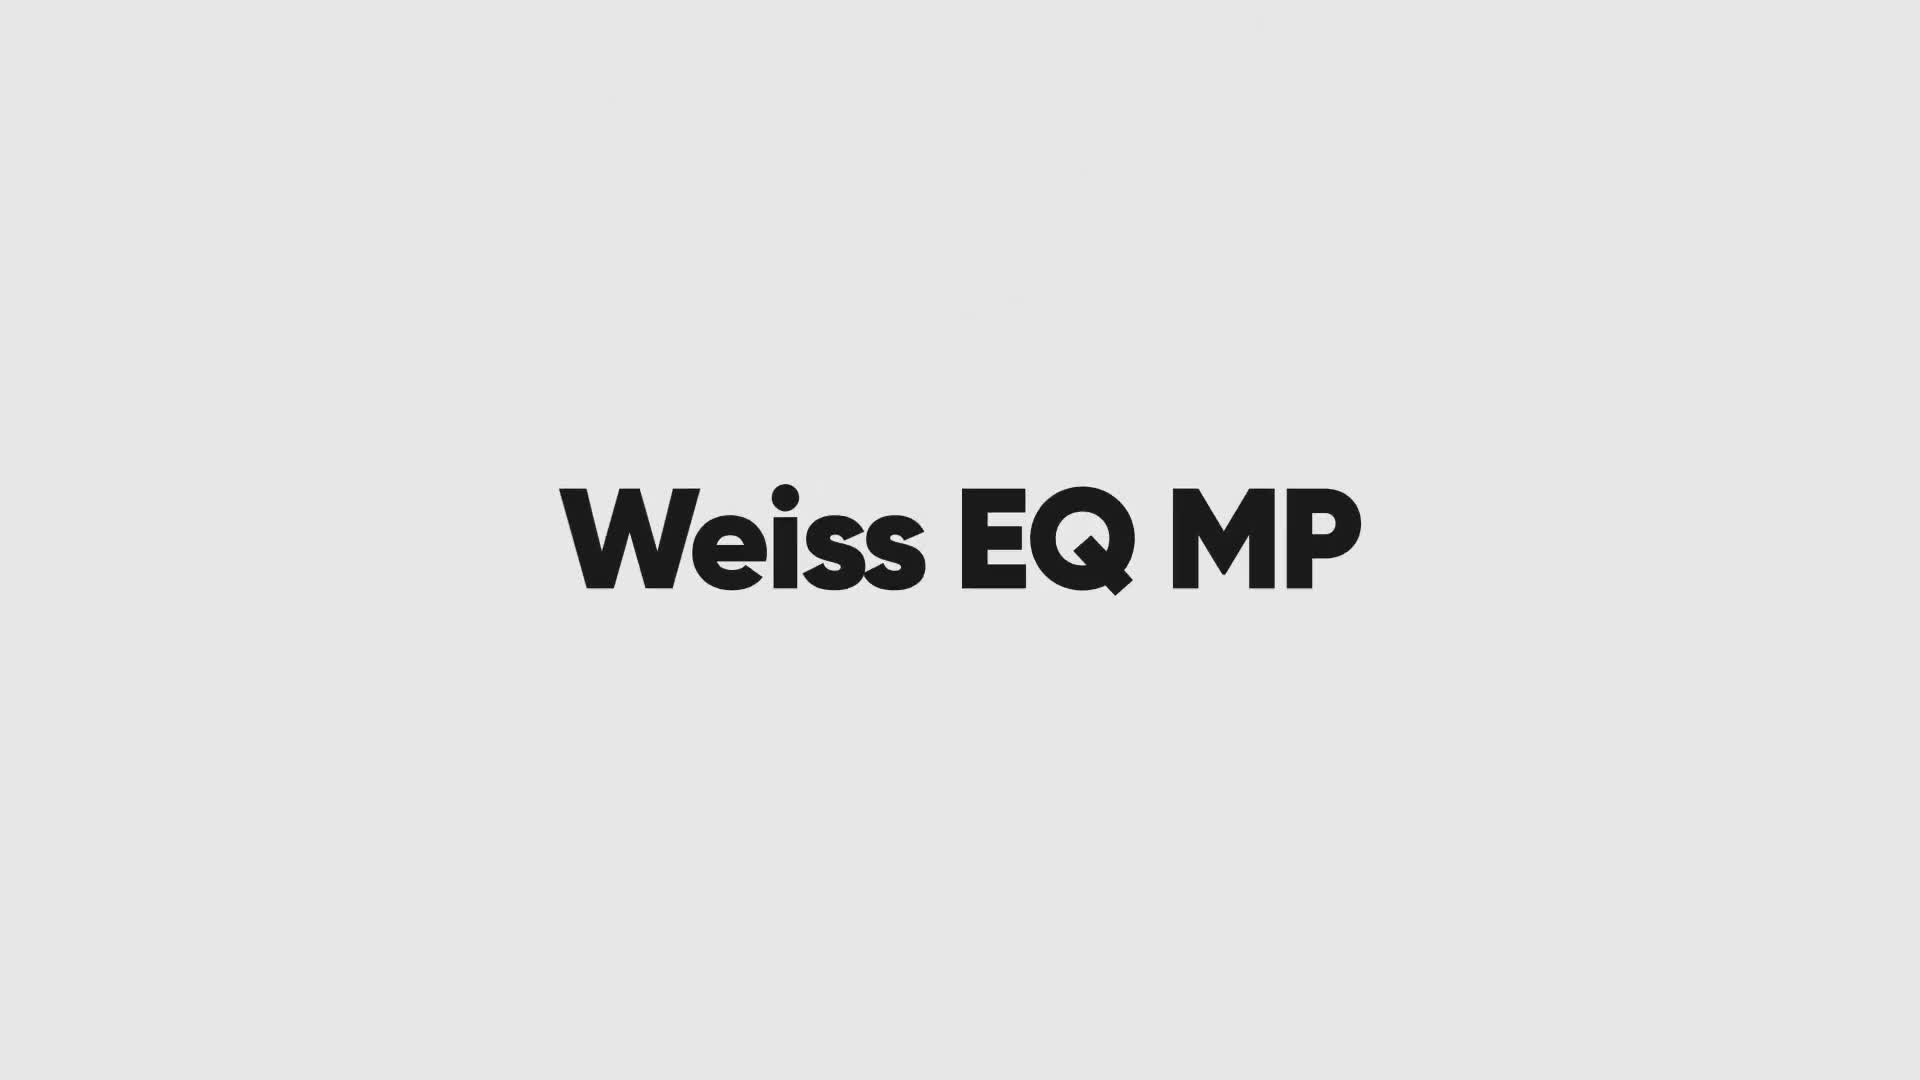 Weiss EQ MP